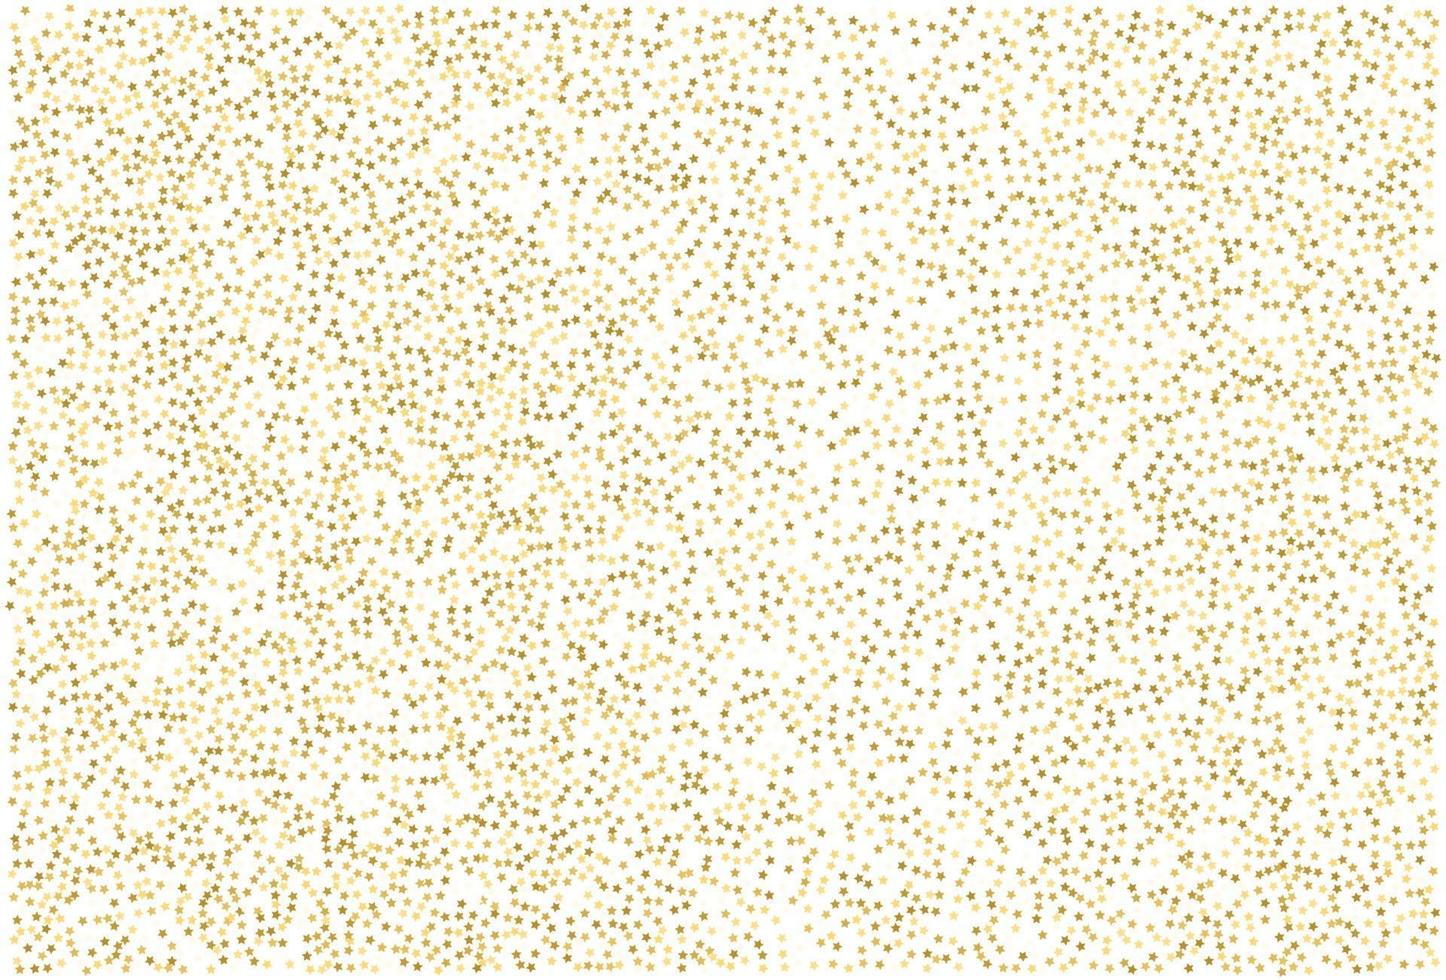 Gold glitter classic star confetti background vector